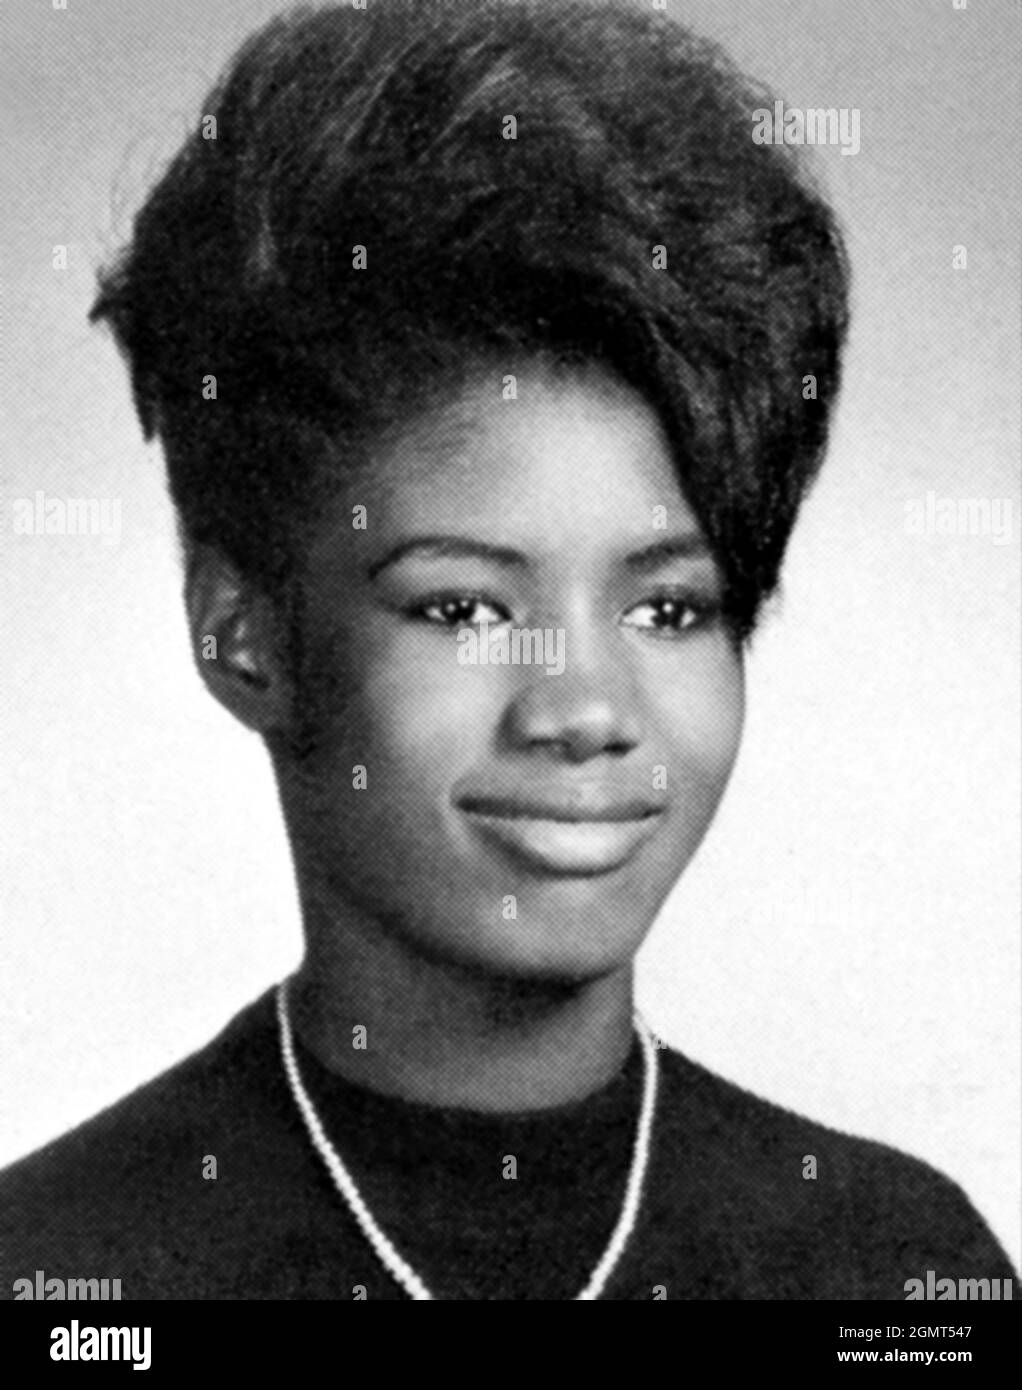 1965 c., NEW YORK , États-Unis : la célèbre chanteuse pop Star jamaïcaine , actrice et mode Top-Model GRACE JONES ( née le 19 mai 1948 ), quand était une jeune fille de 17 ans , Lyncourt, Salina, New York, près de Syracuse . Photo de l'Annuaire du lycée . Photographe inconnu. - HISTOIRE - FOTO STORICHE - PORTRAIT - RITRATTO - Personalità da bambino bambini bambina da giovane giovani - personnalités quand était jeune - INFANZIA - ENFANCE - ATTRICE - MODELLA - indossatrice - mannequin - MUSIQUE POP - MUSICA - cantante - POPSTAR - sourire - sorriso - Musa - Muse - annuario scolastico --- ARCHI Banque D'Images